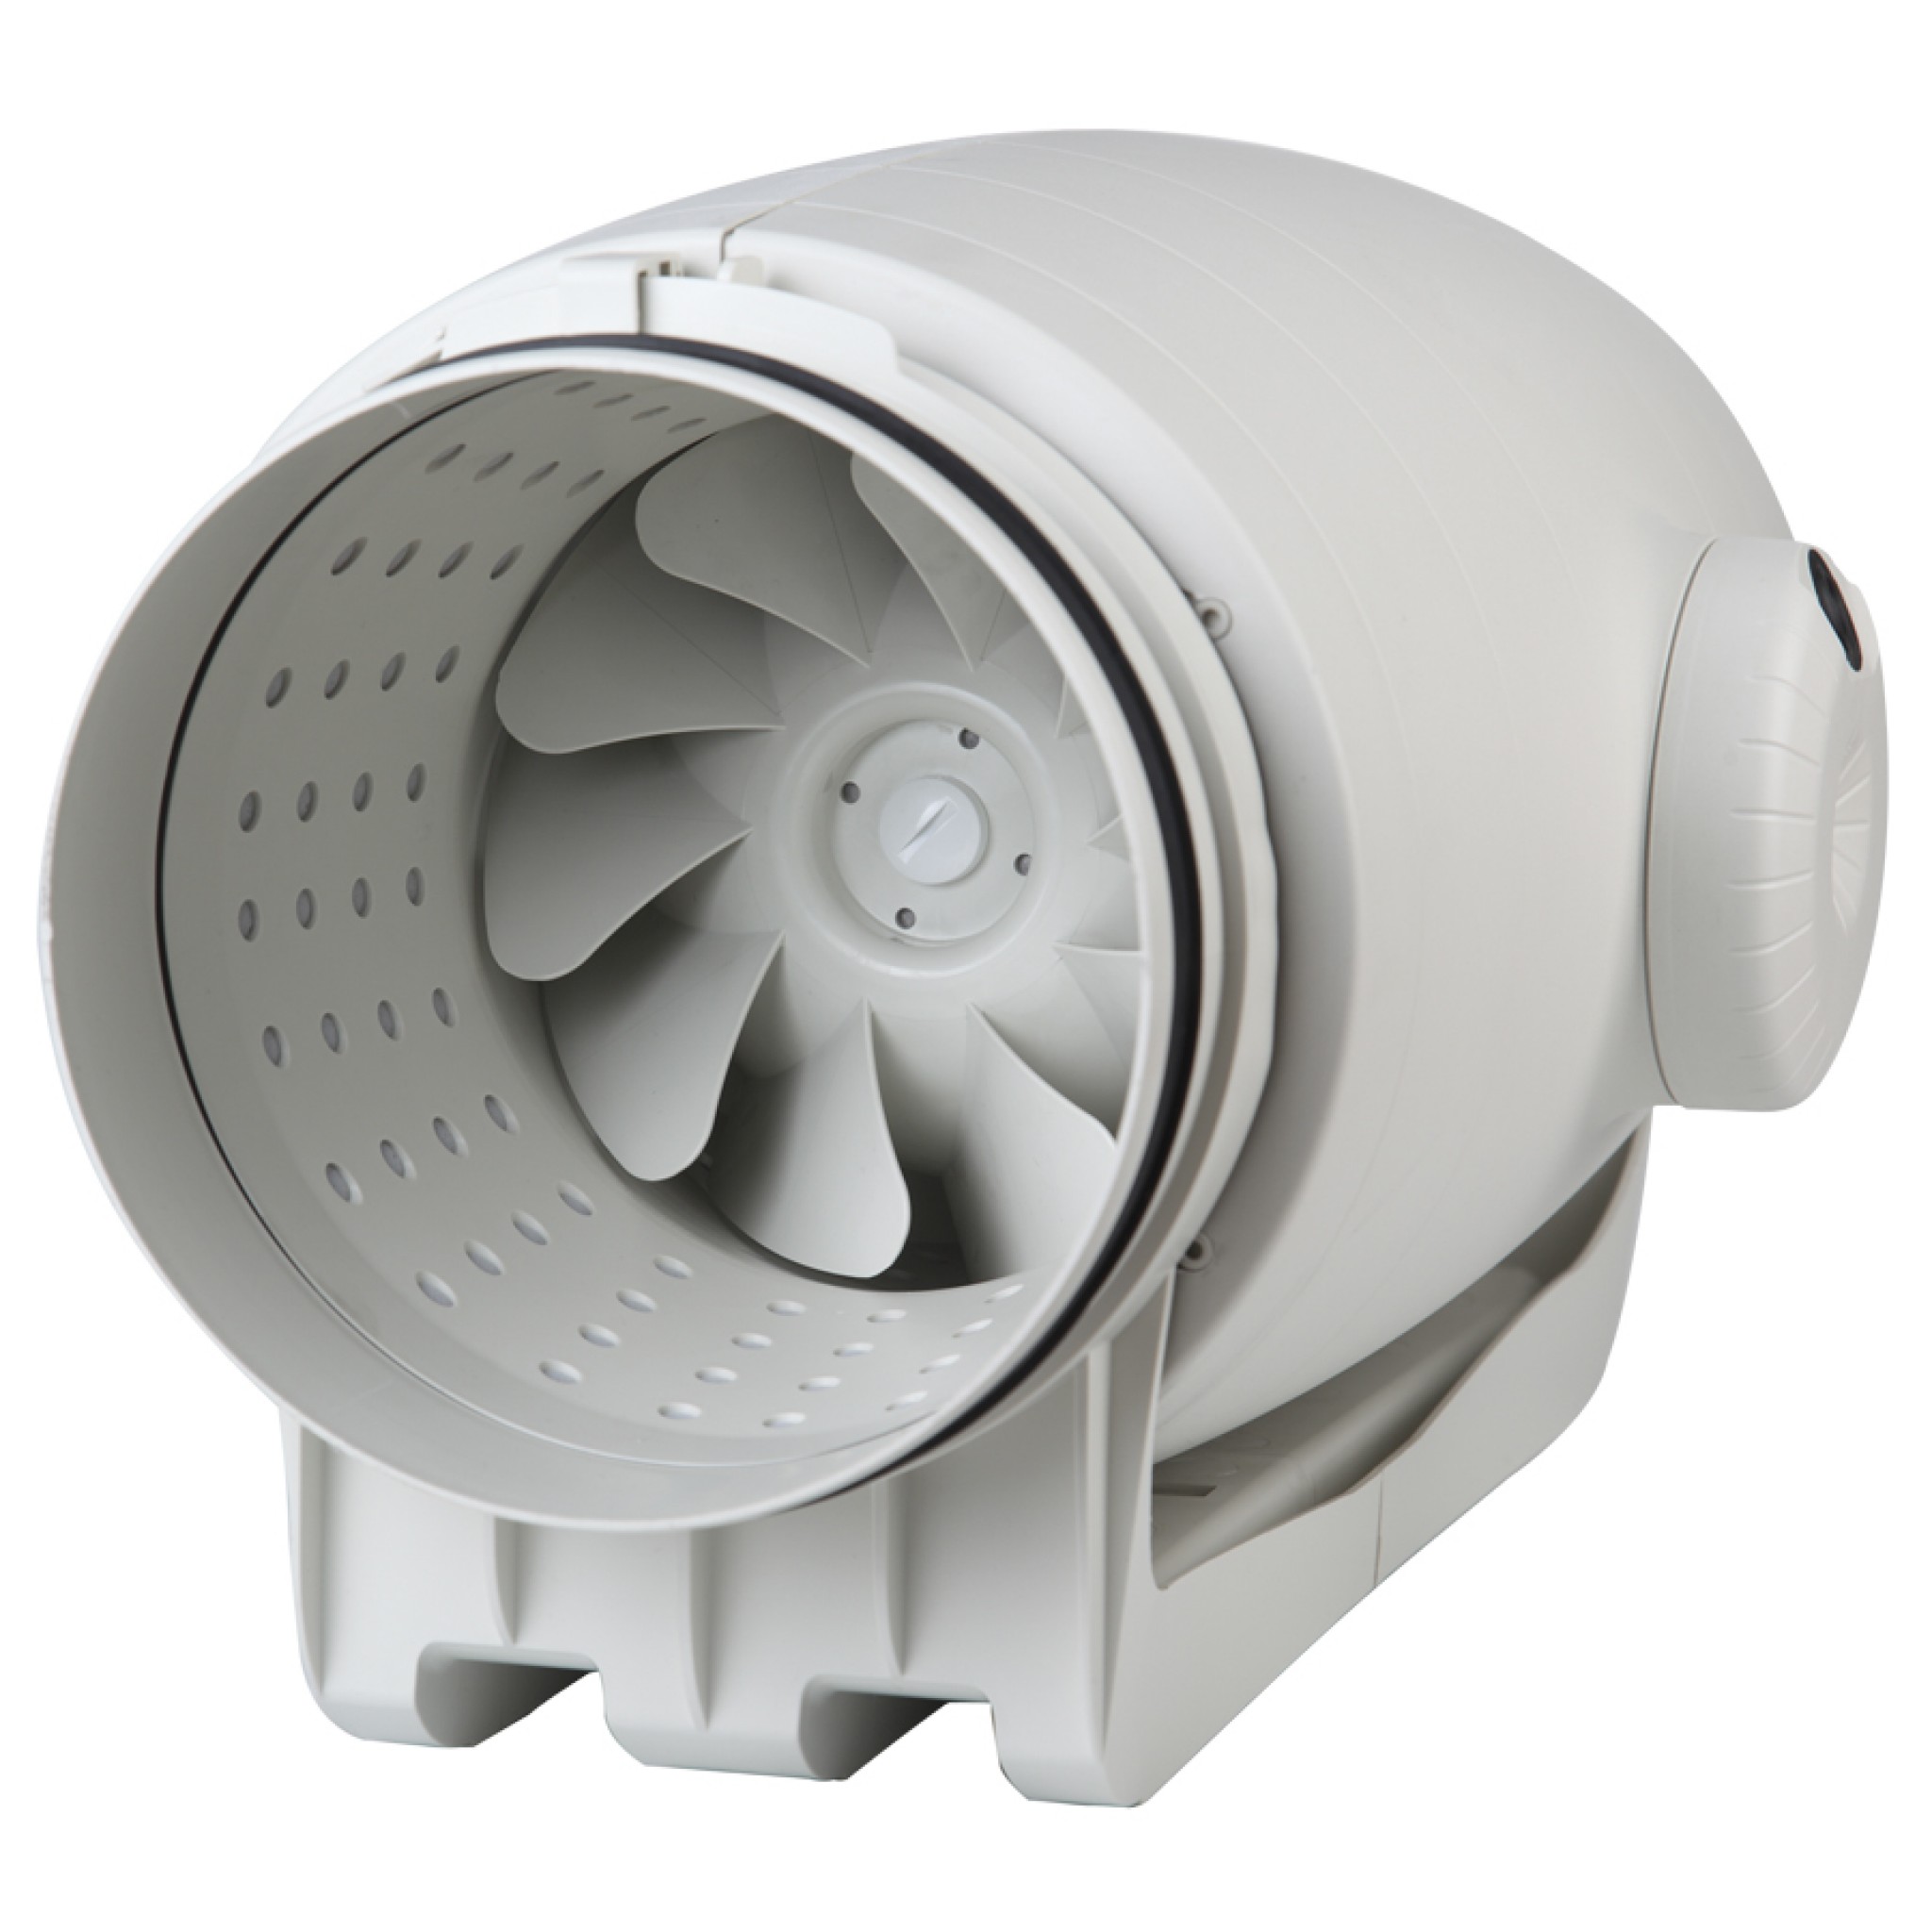 Канальный вентилятор 250 мм Soler&Palau TD-1300/250 Silent Ecowatt VE